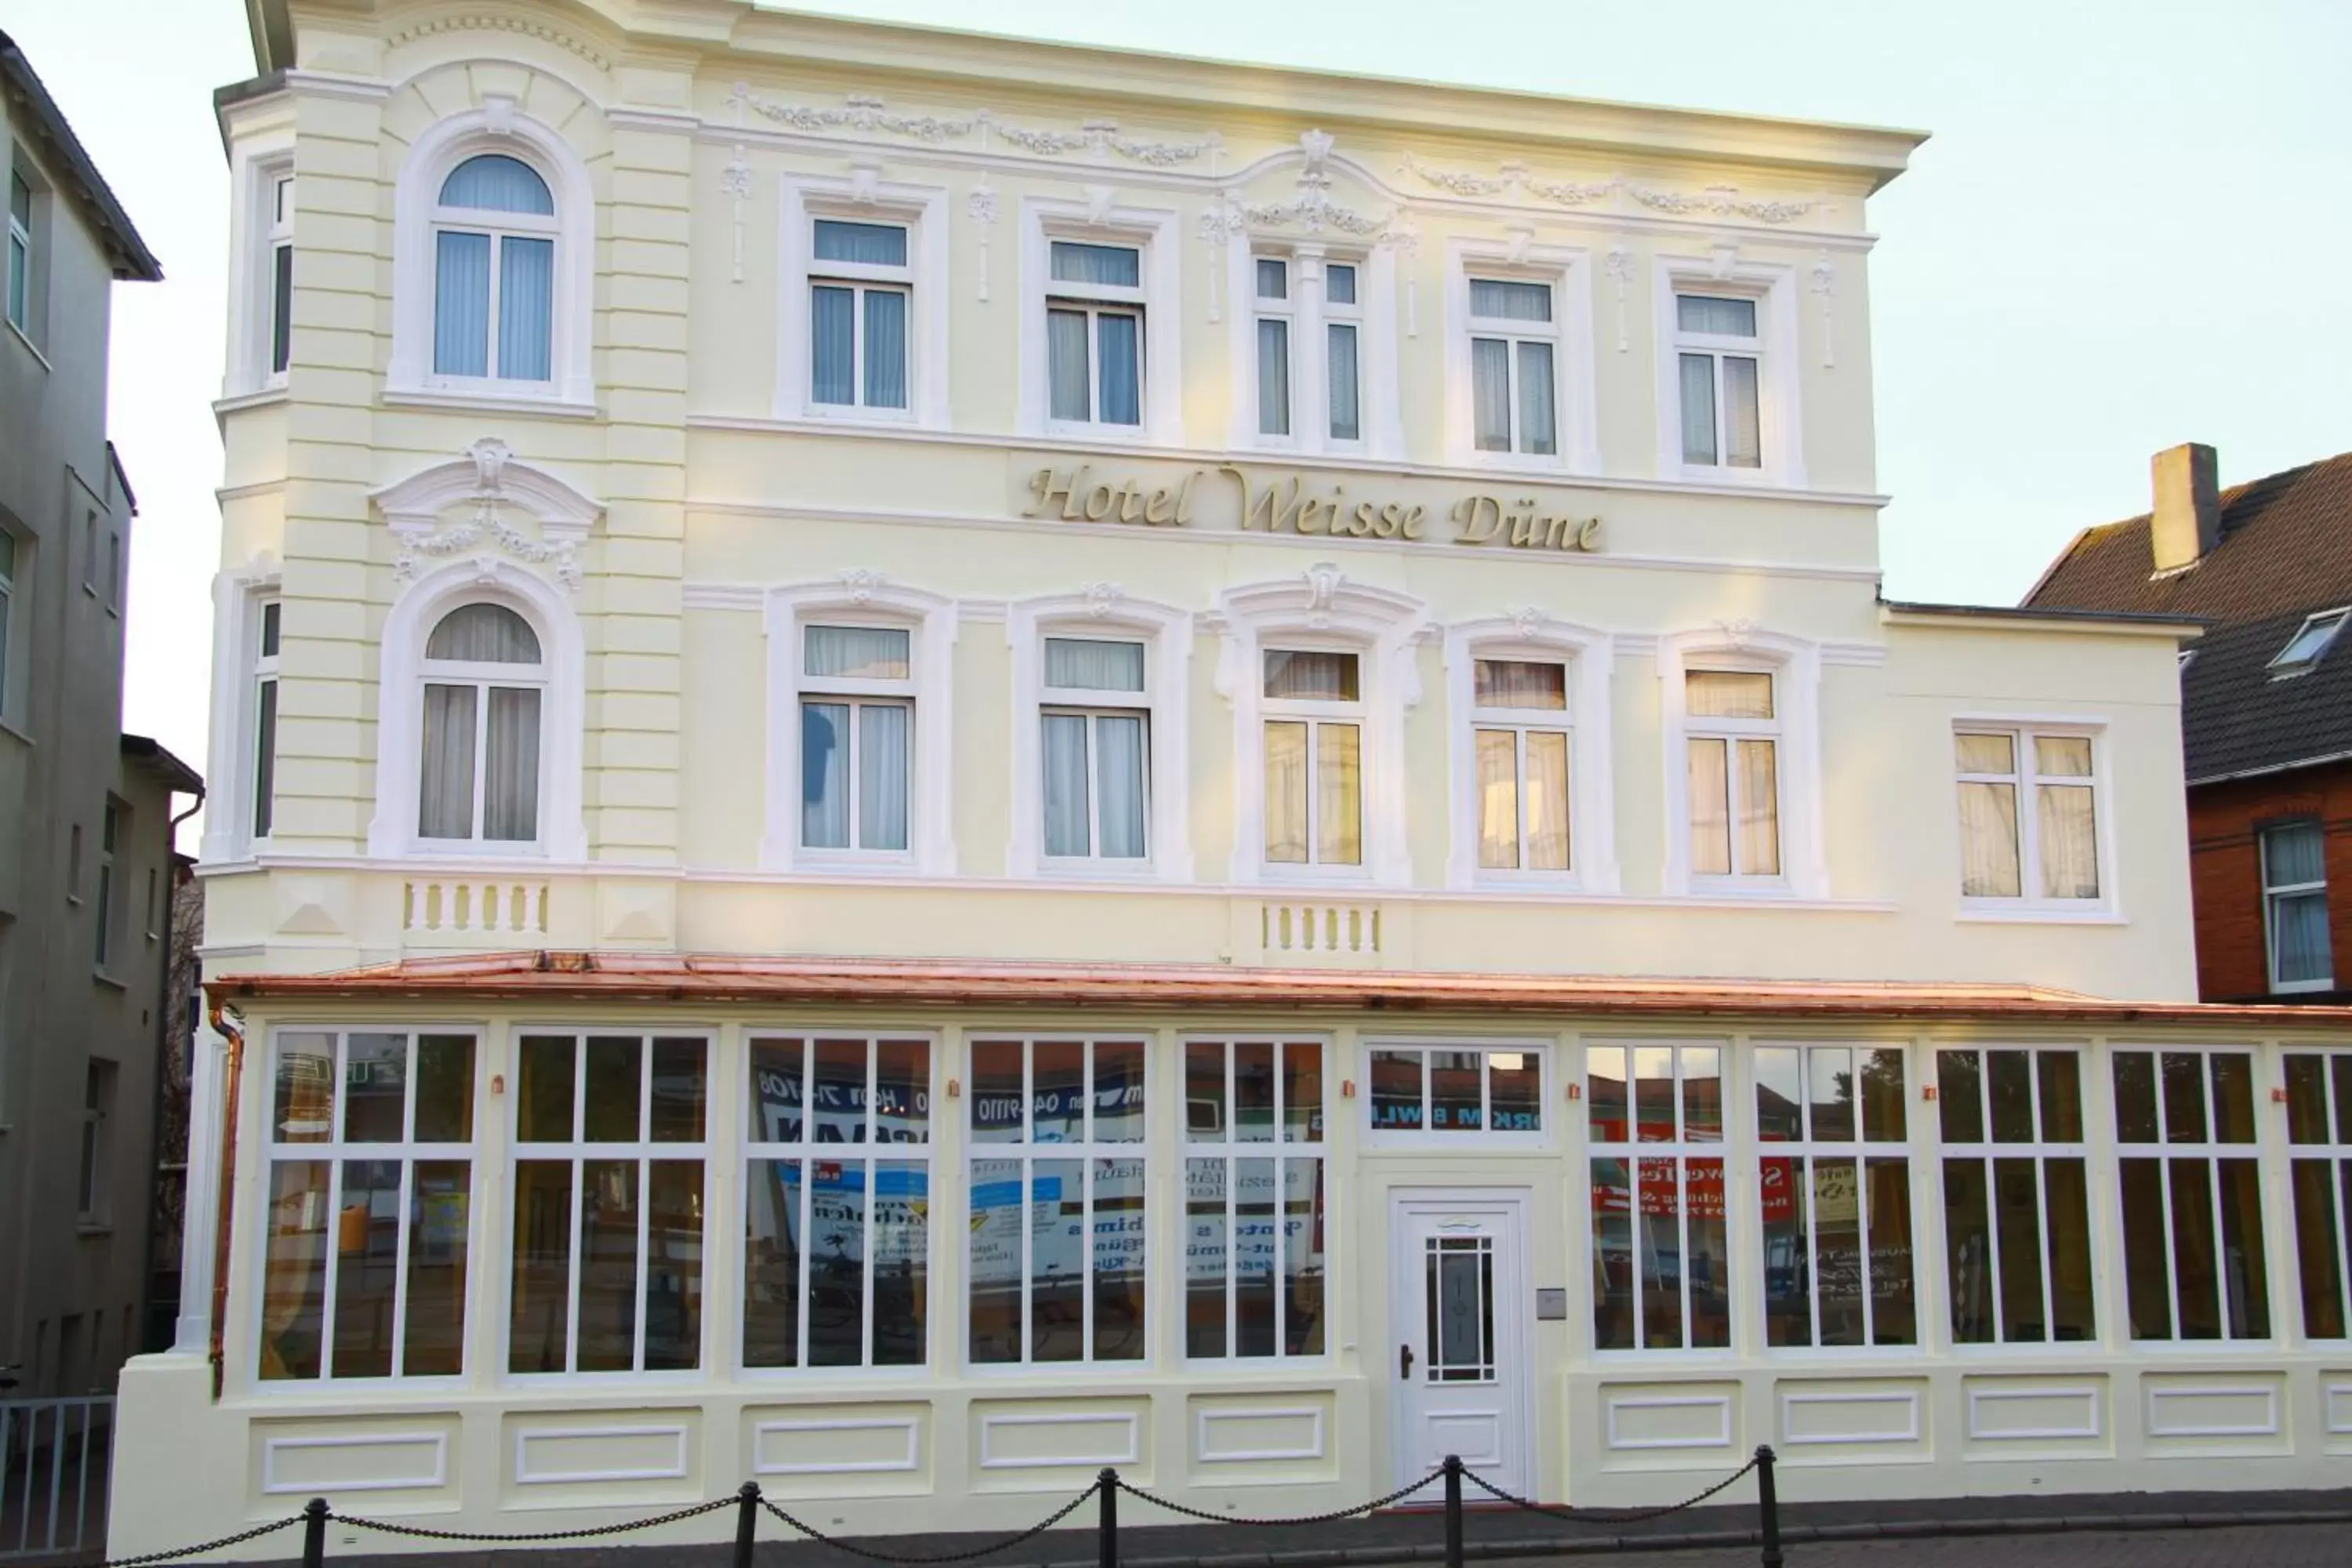 Facade/entrance in Hotel Weisse Düne